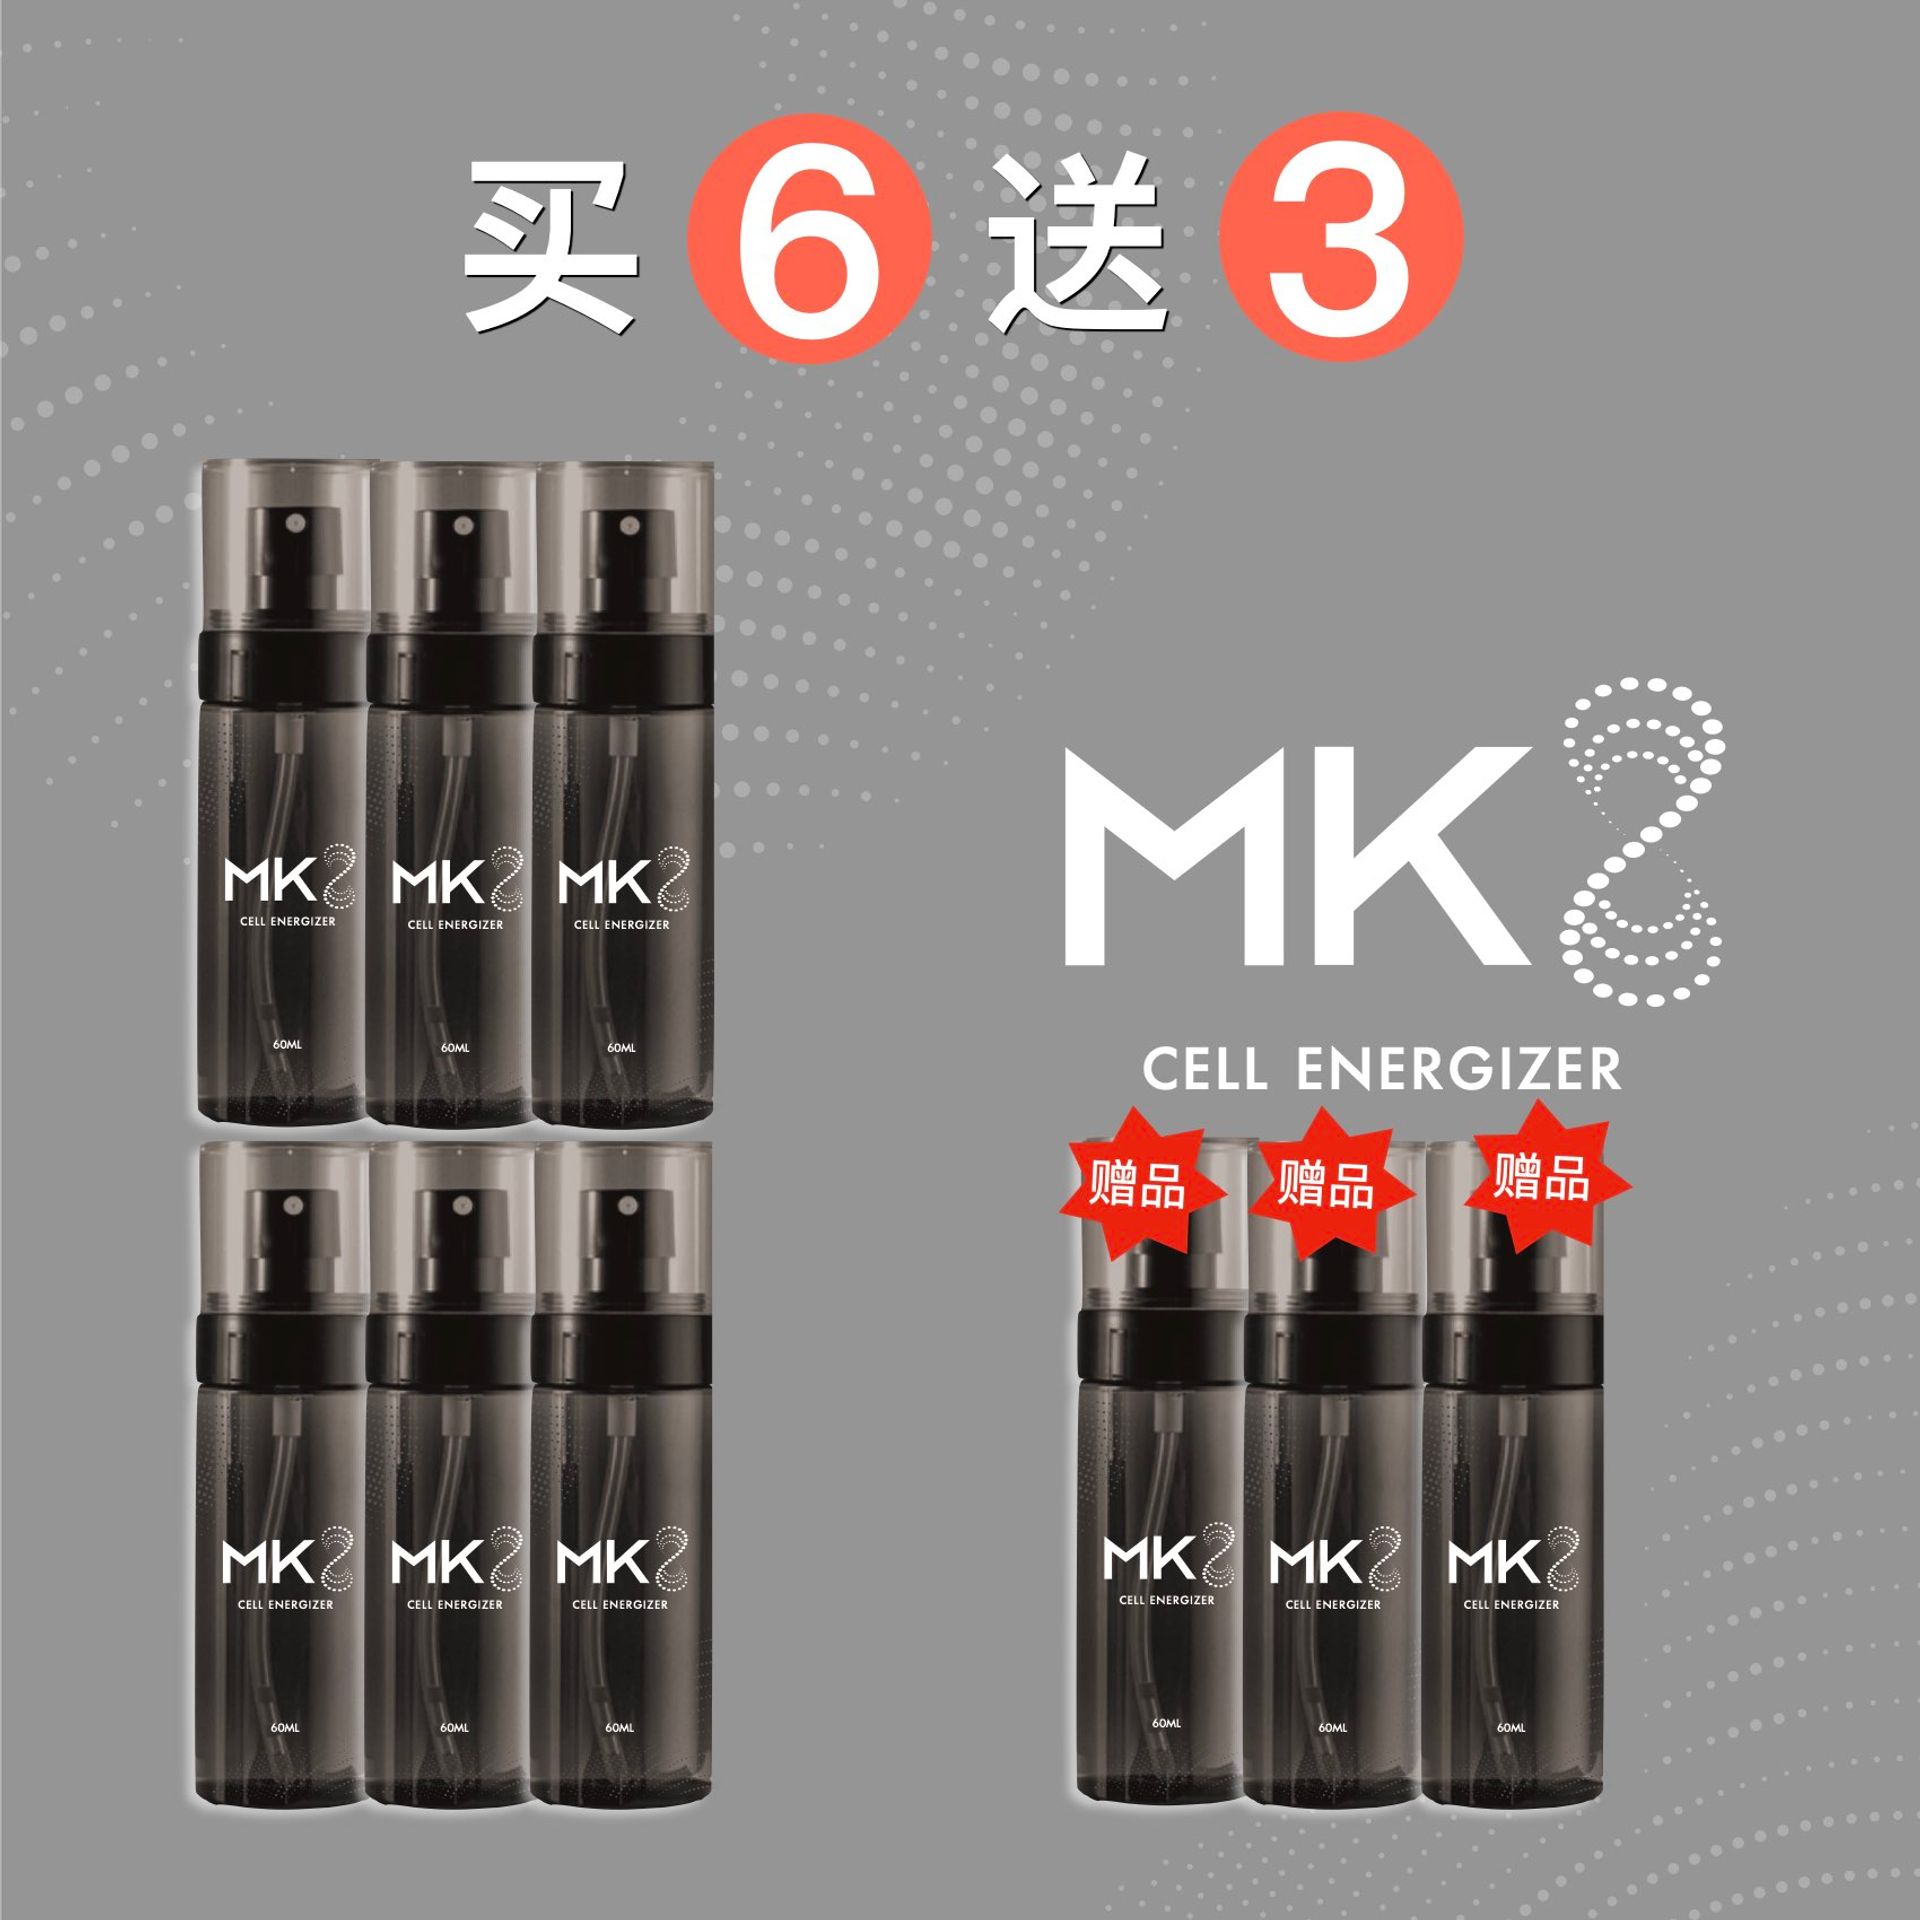 MK8-6+3